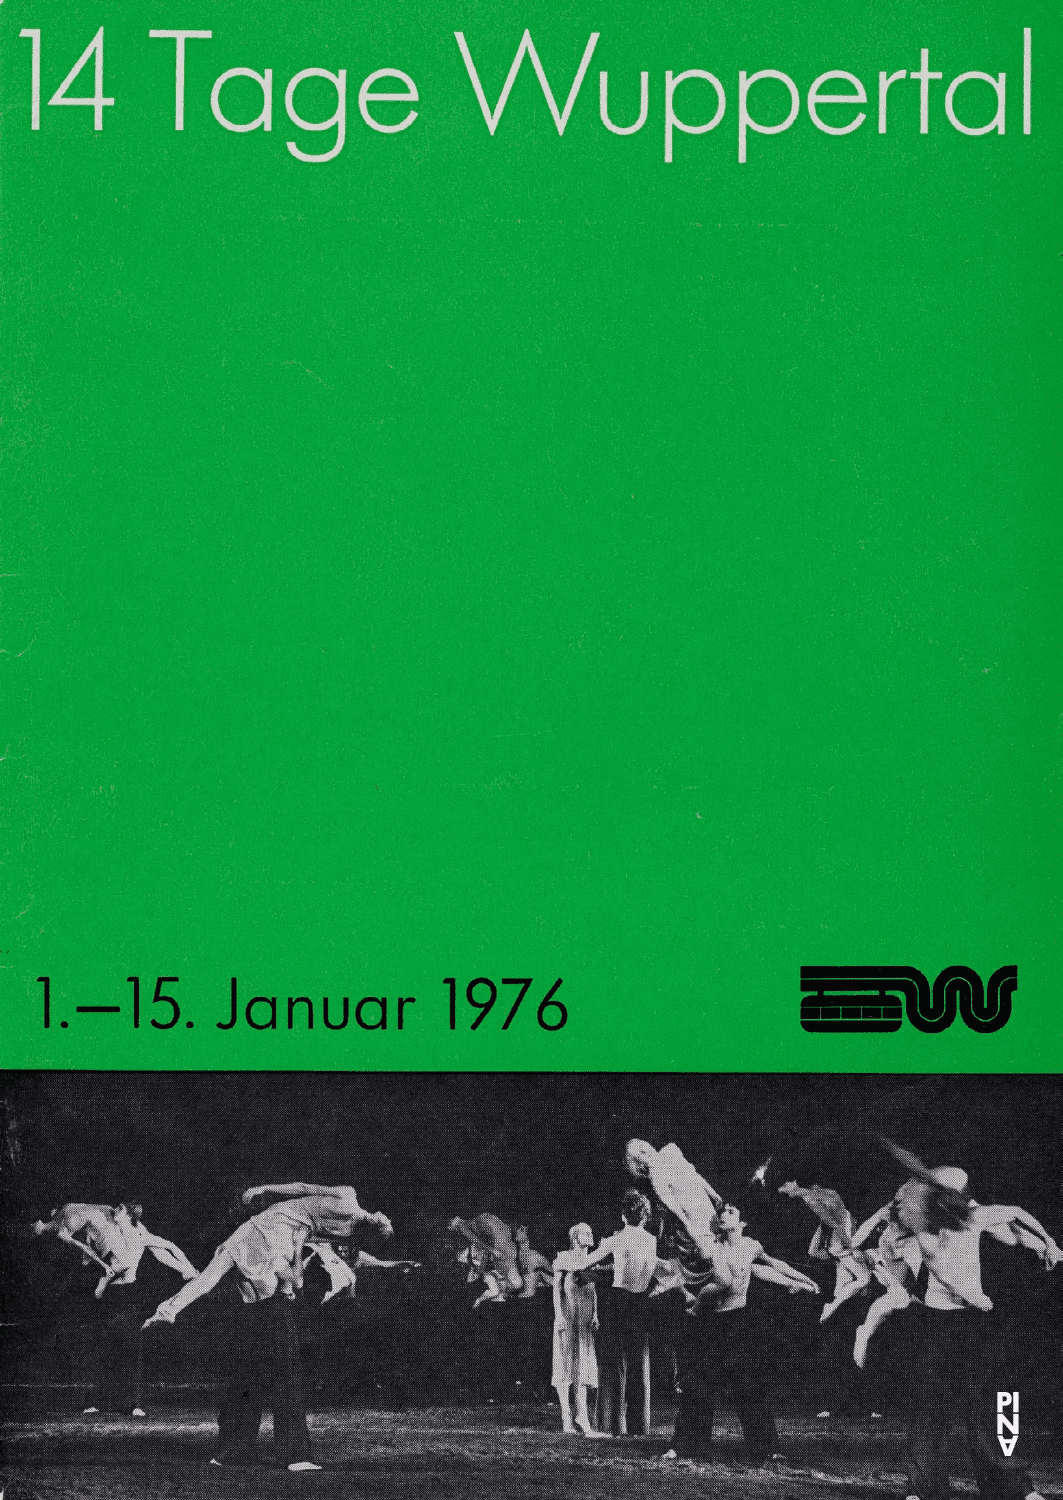 Programme de la saison pour « Le Sacre du printemps » de Pina Bausch avec Tanztheater Wuppertal à Wuppertal, 10 jan. 1976 – 15 jan. 1976